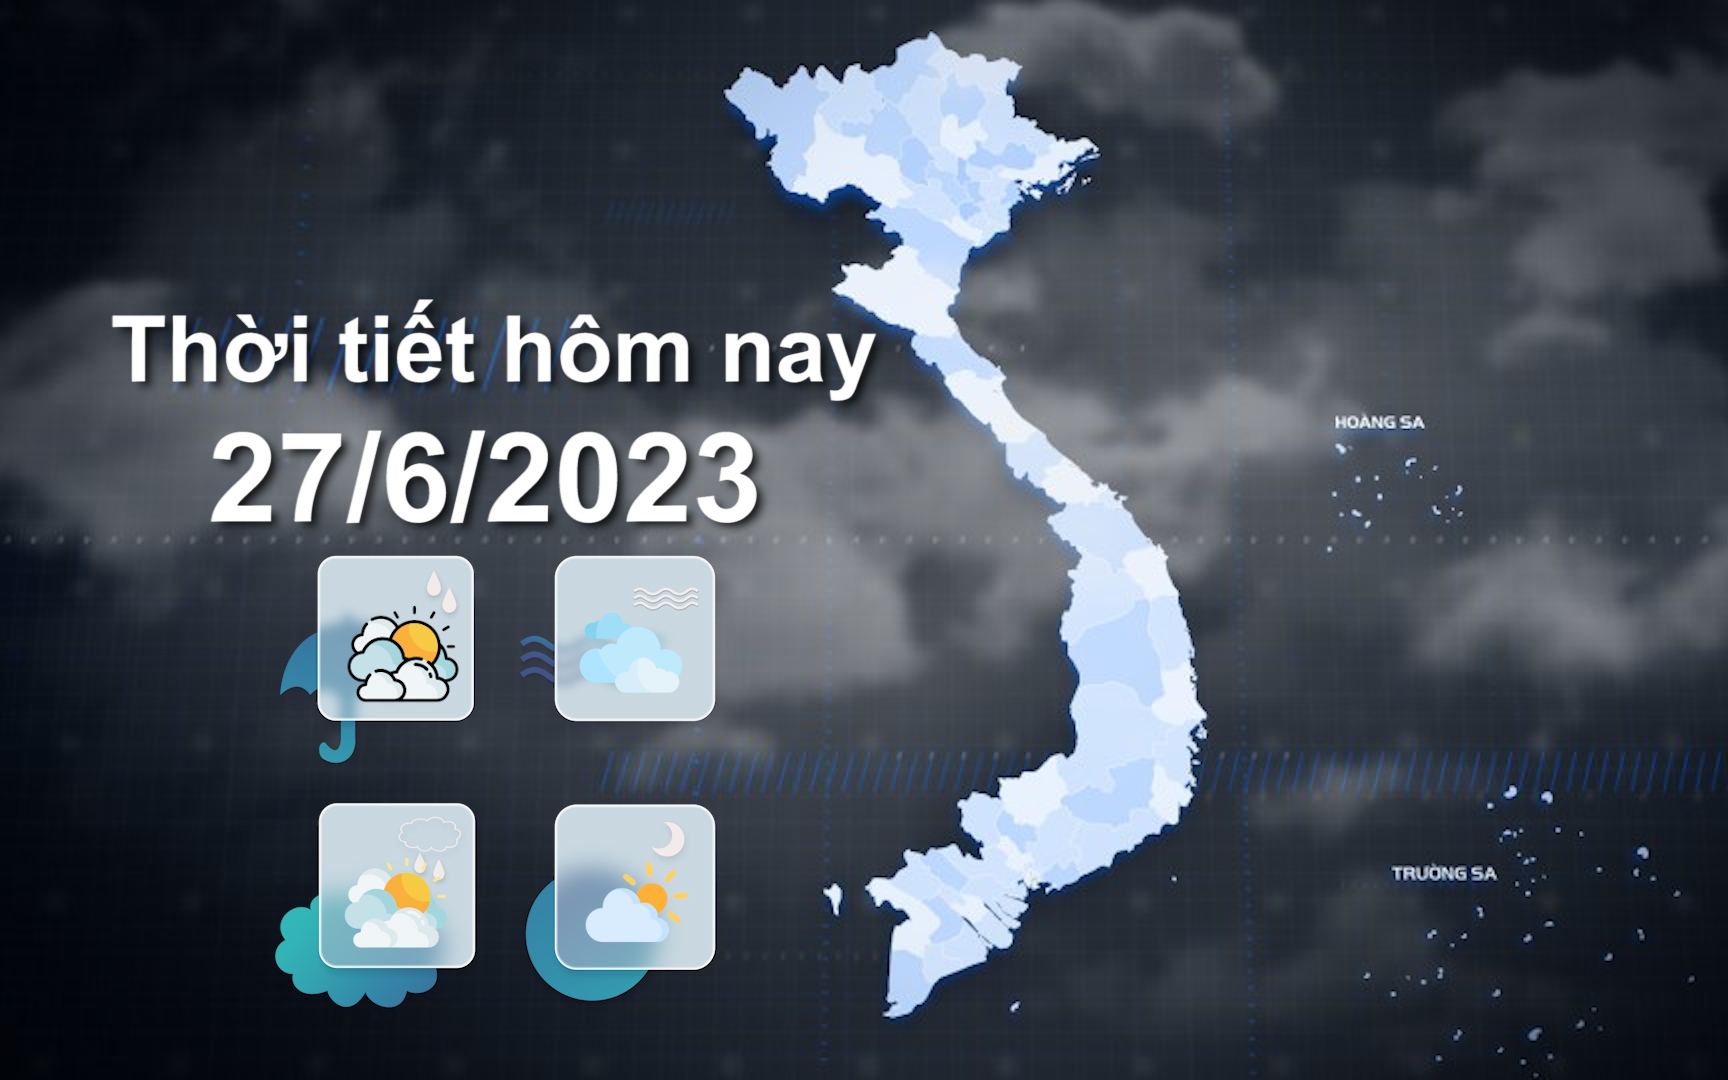 Thời tiết hôm nay 27/6/2023: Đông Bắc Bộ, Bắc Trung Bộ cục bộ mưa to đến rất to